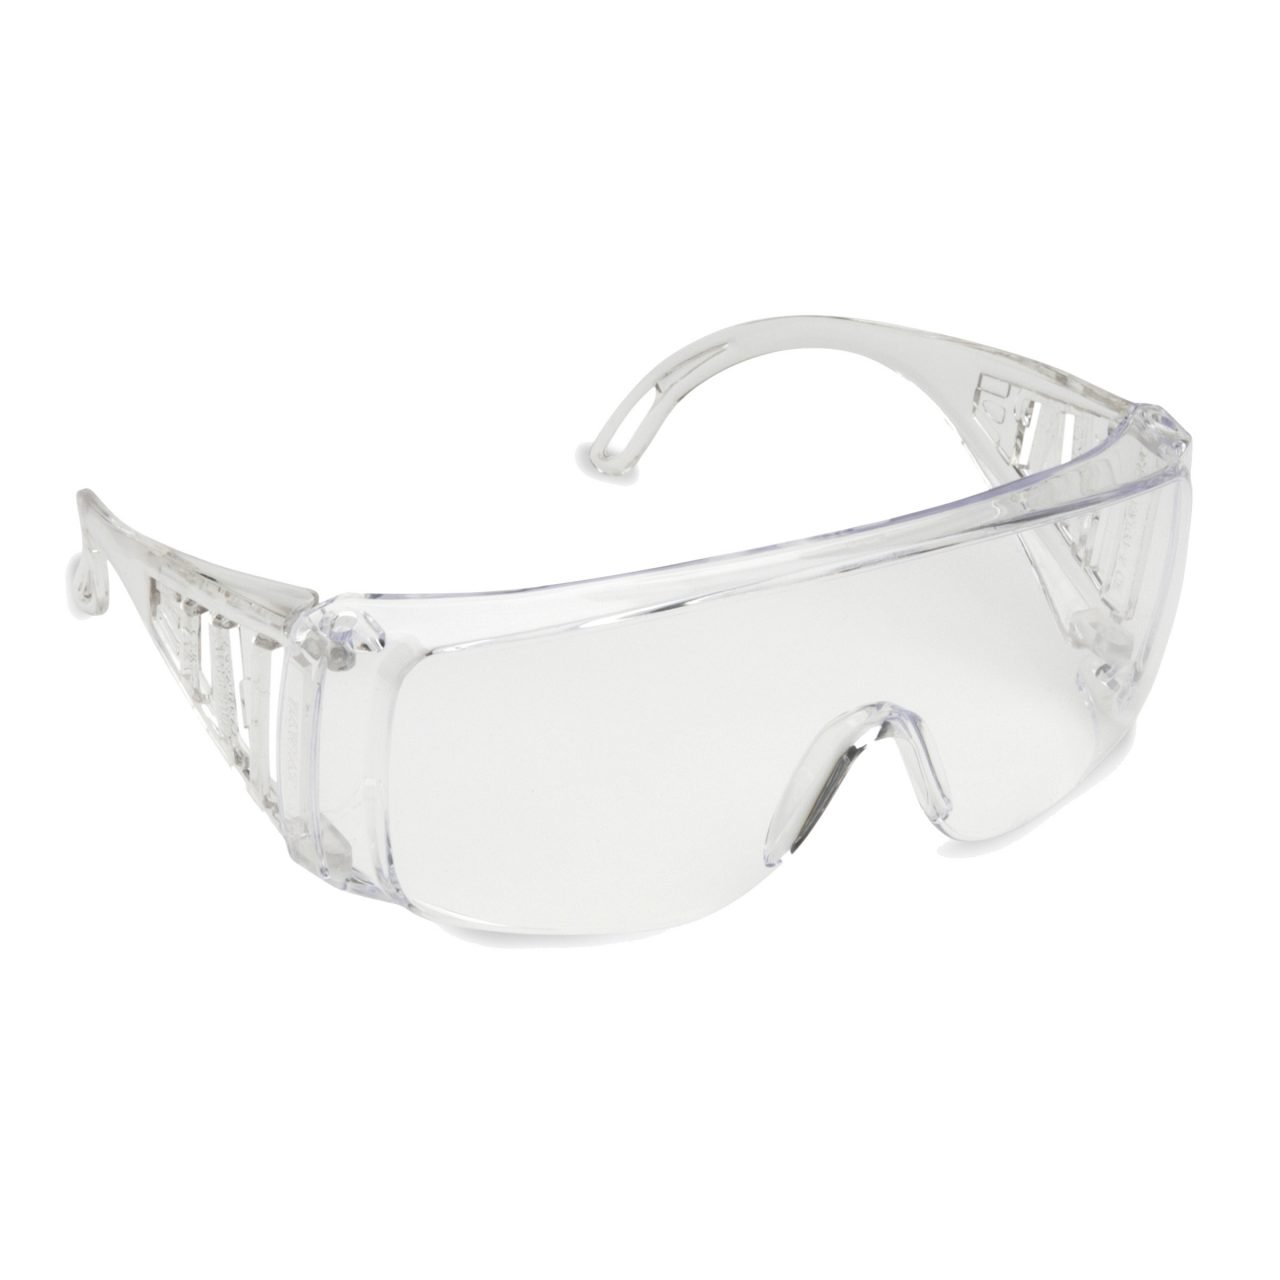 Cordova Slammer Safety Glasses - SPEC10S